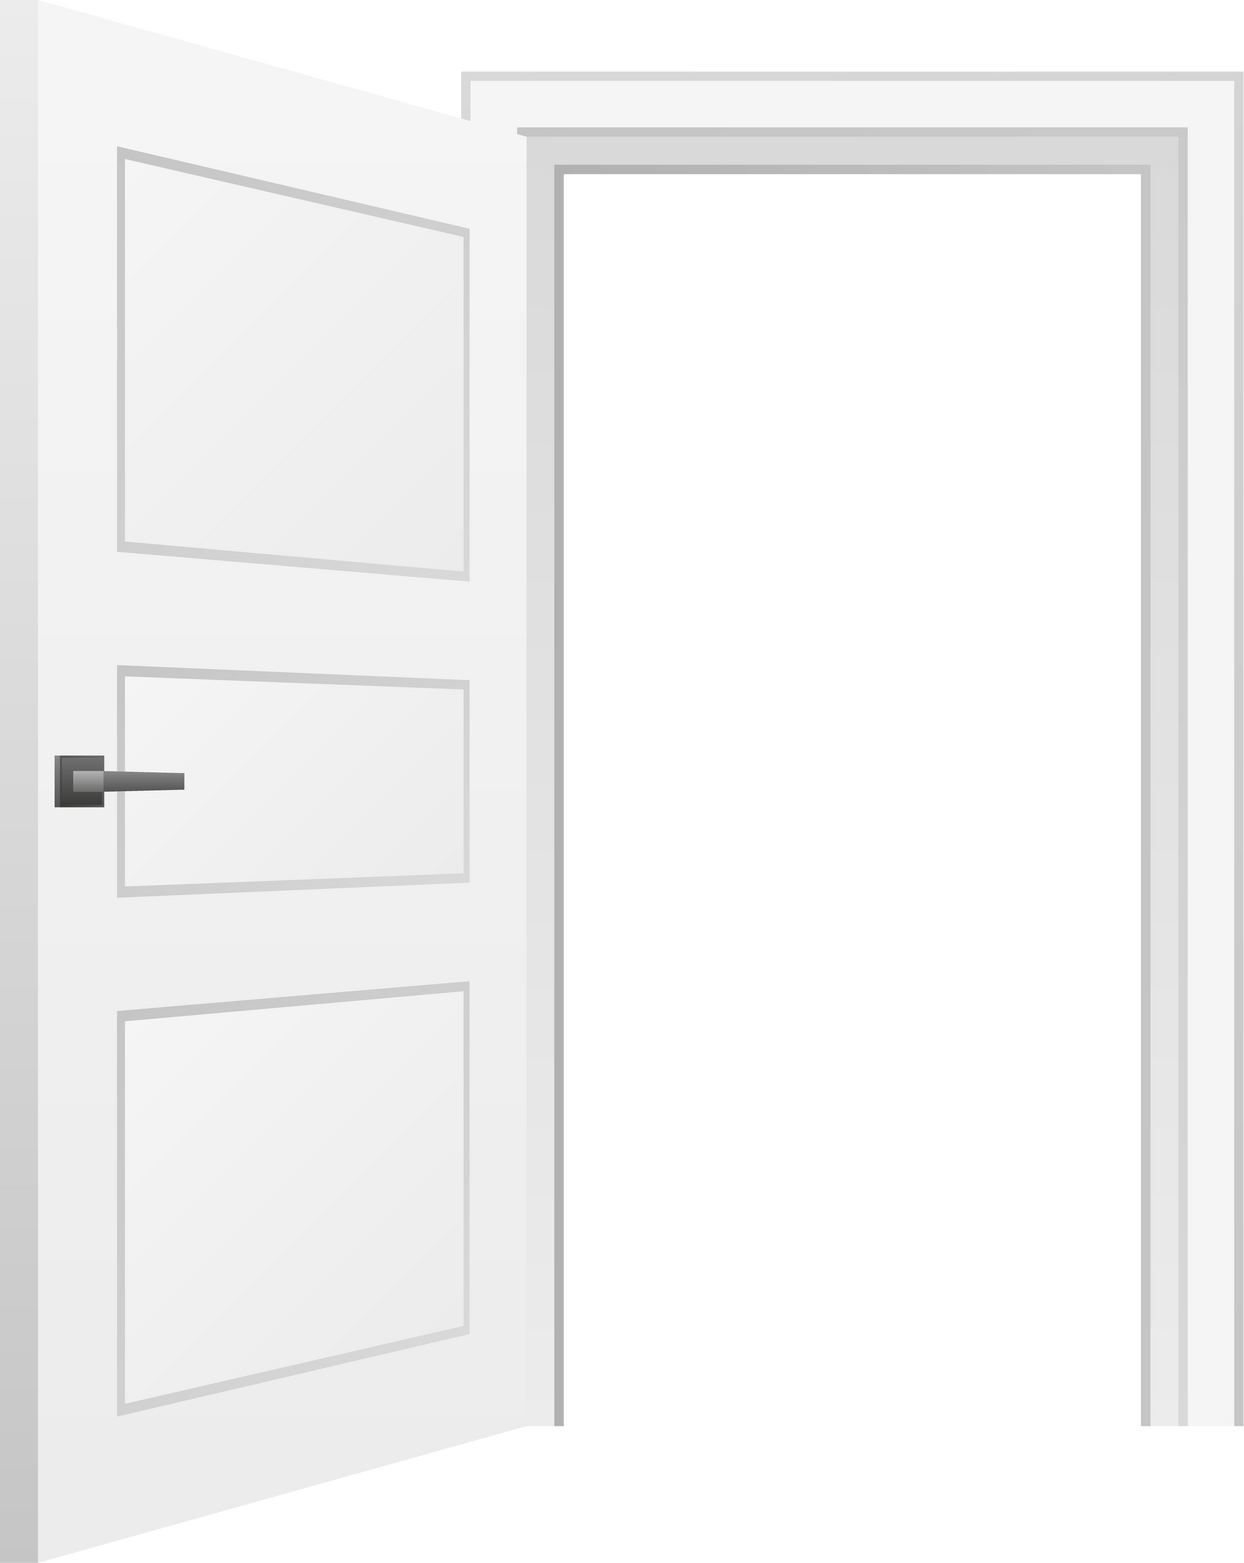 Cartoon door. Opened and closed wooden doors. Vector illustration.